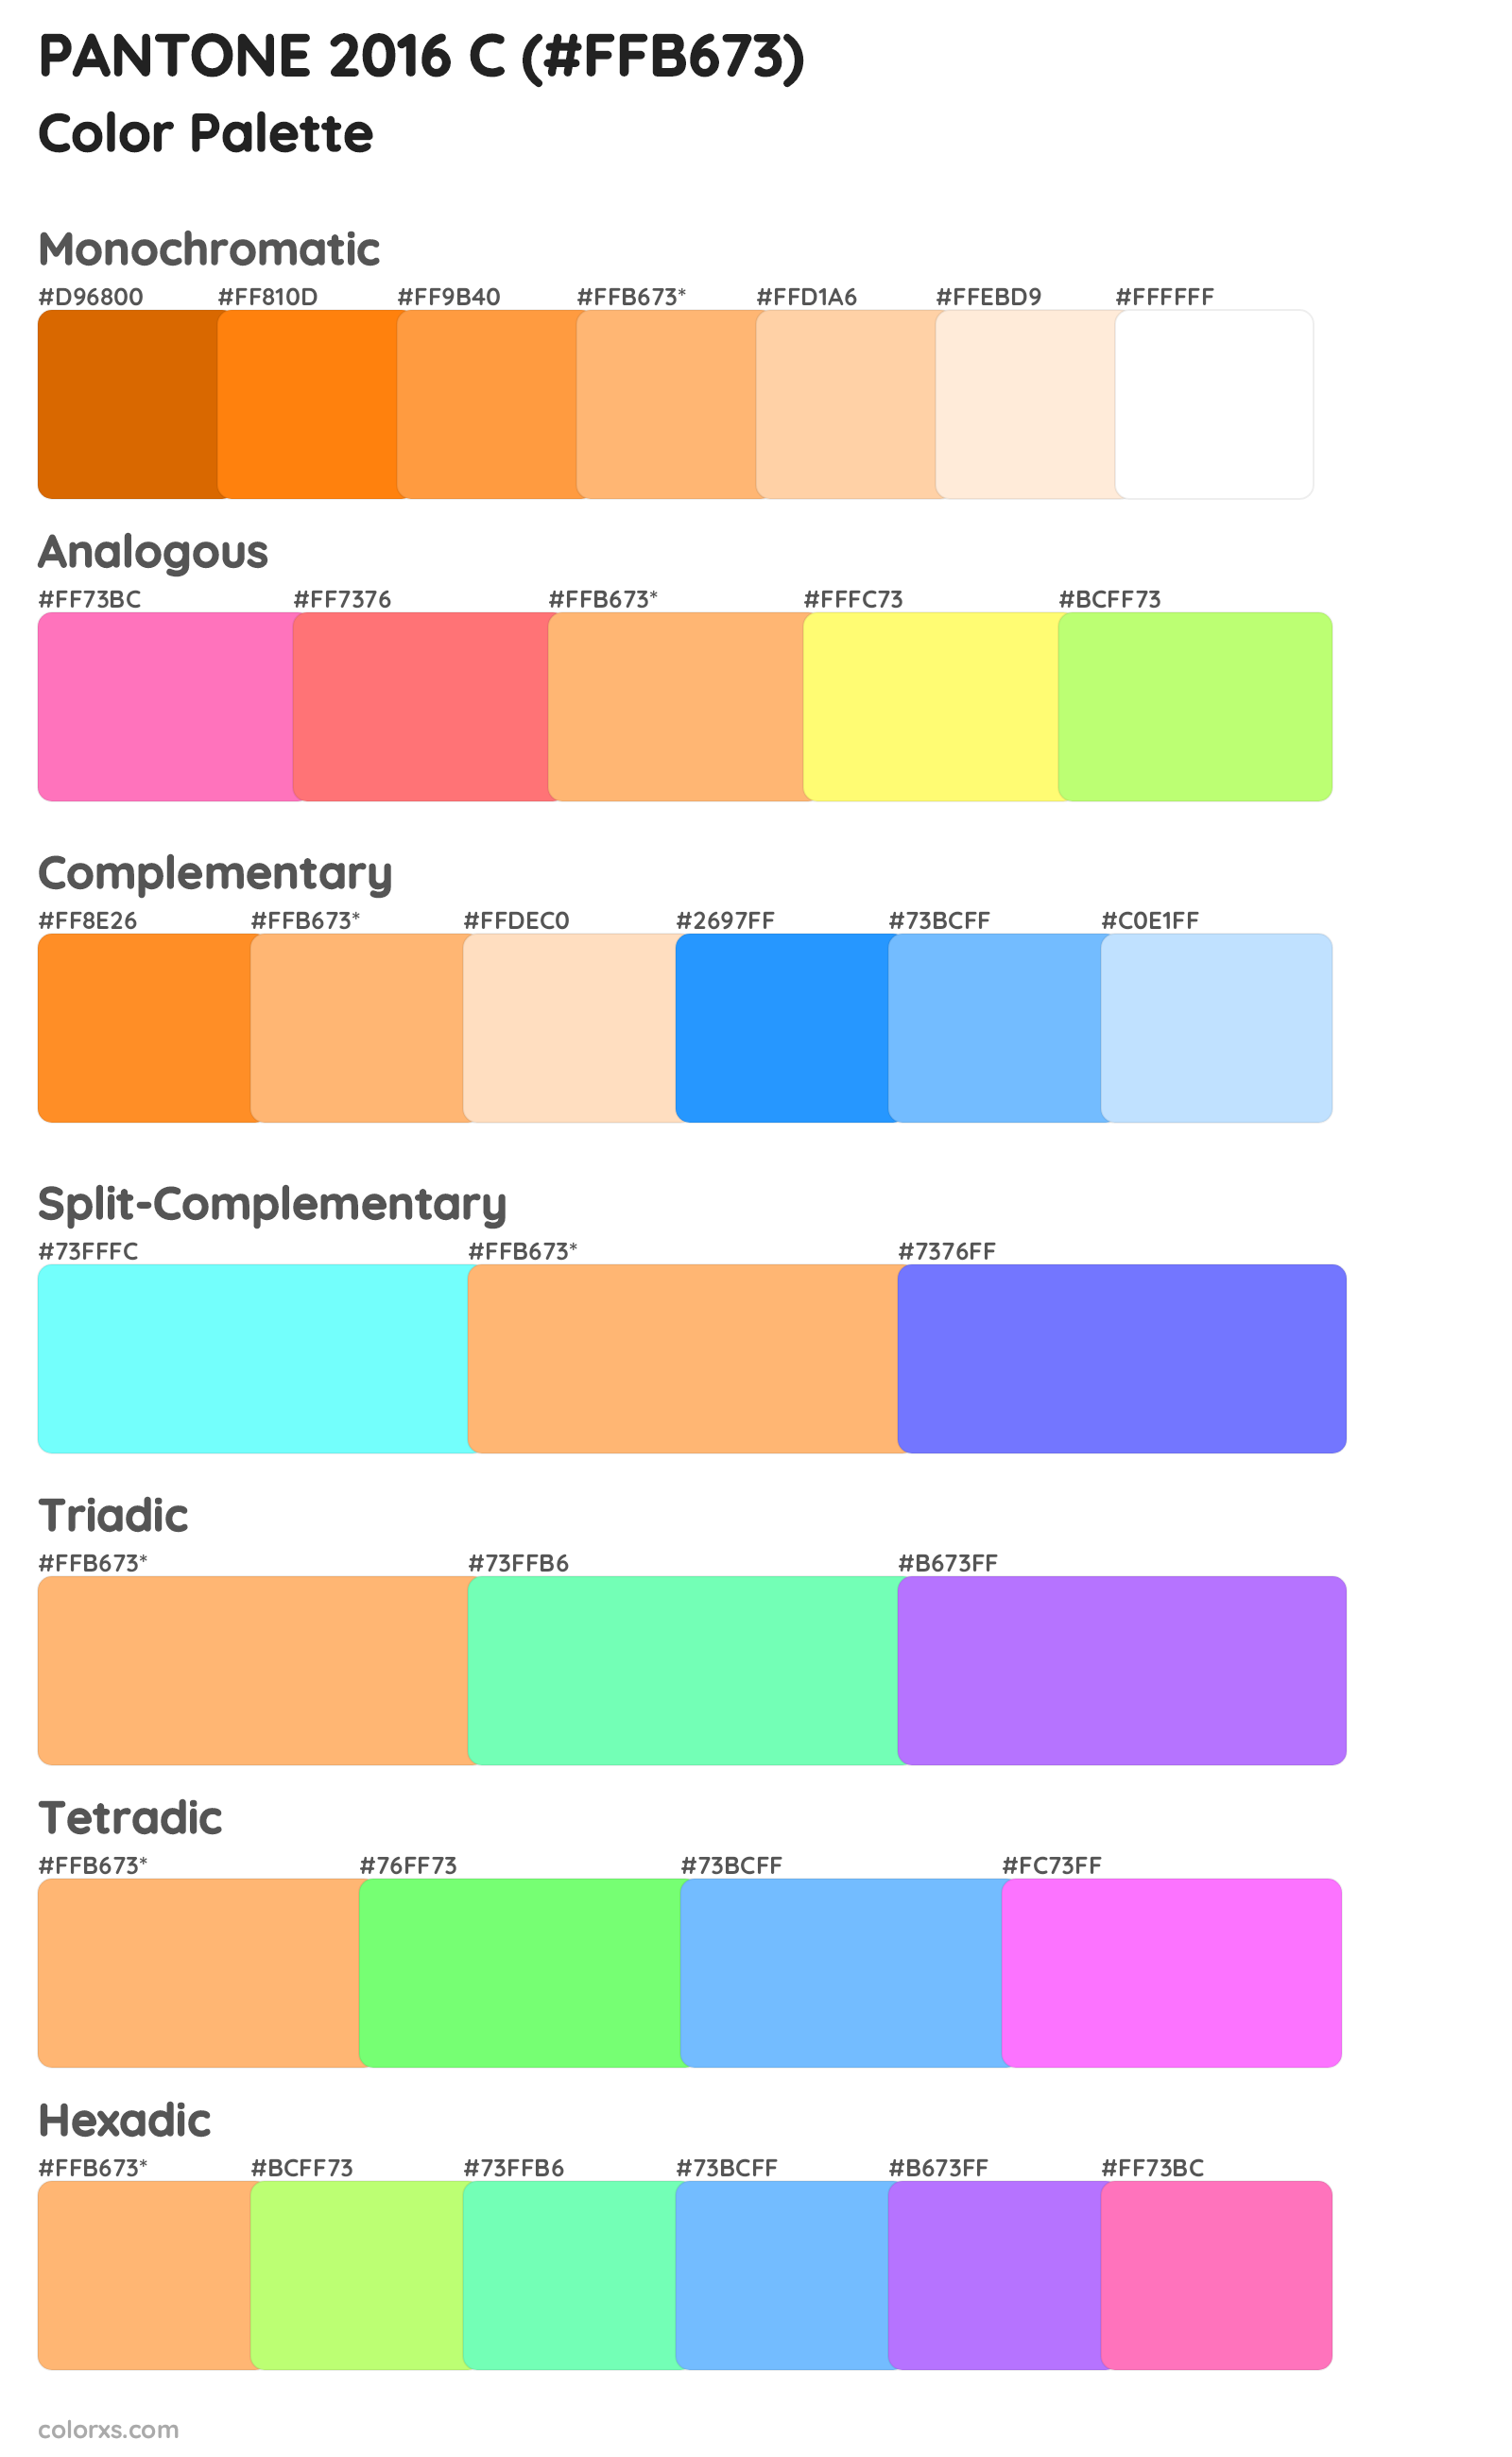 PANTONE 2016 C Color Scheme Palettes